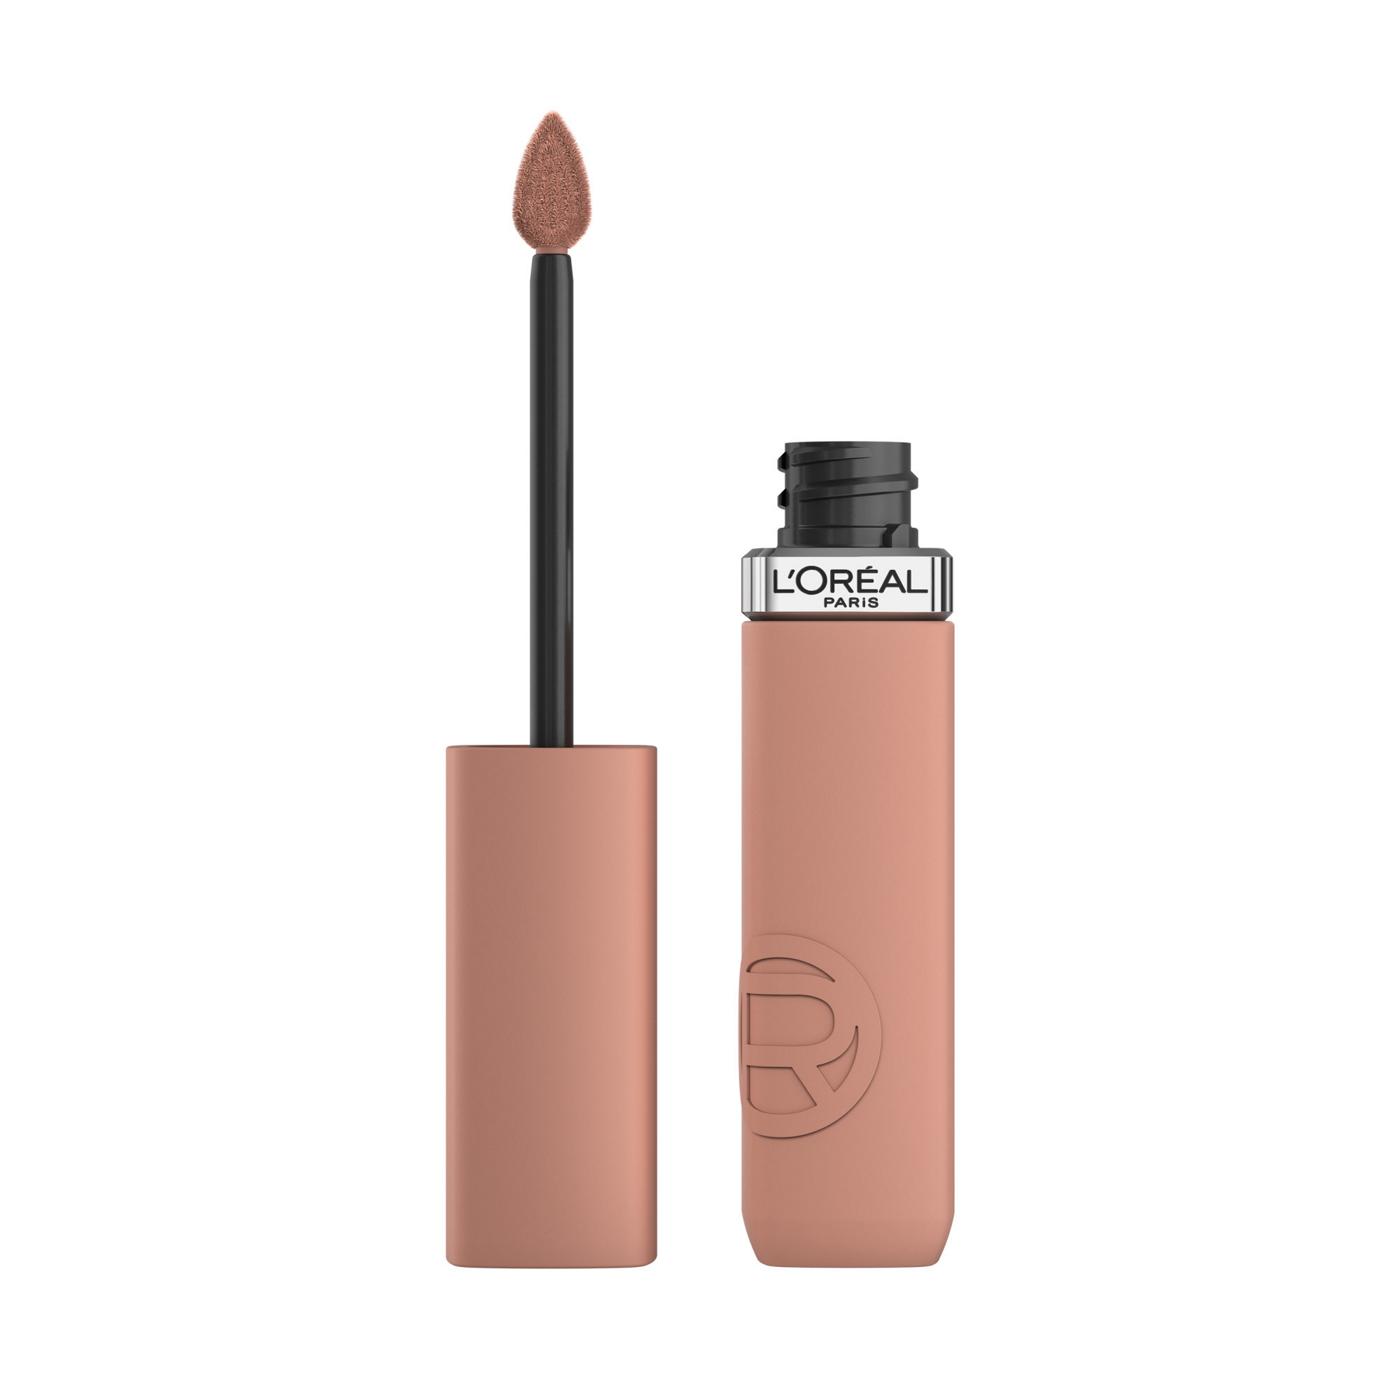 L'Oréal Paris Infallible Le Matte Resistance Liquid Lipstick - Breakfast in Bed; image 1 of 6